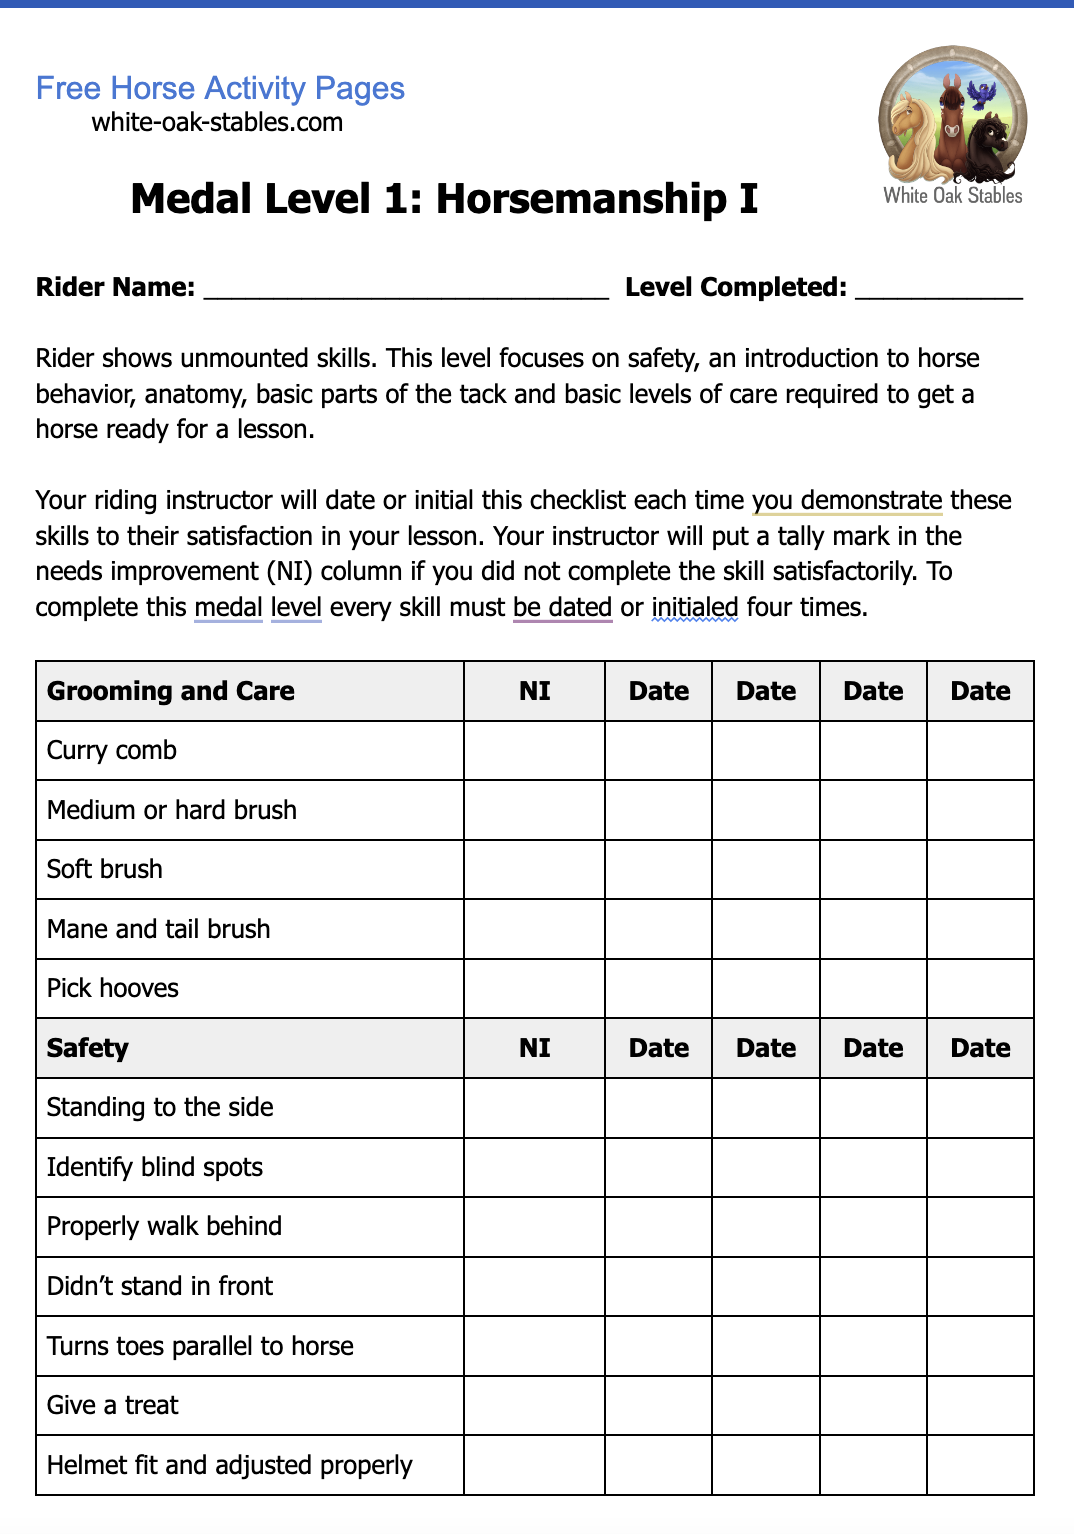 Rider Medals – Level 1: Horsemanship I Checklist